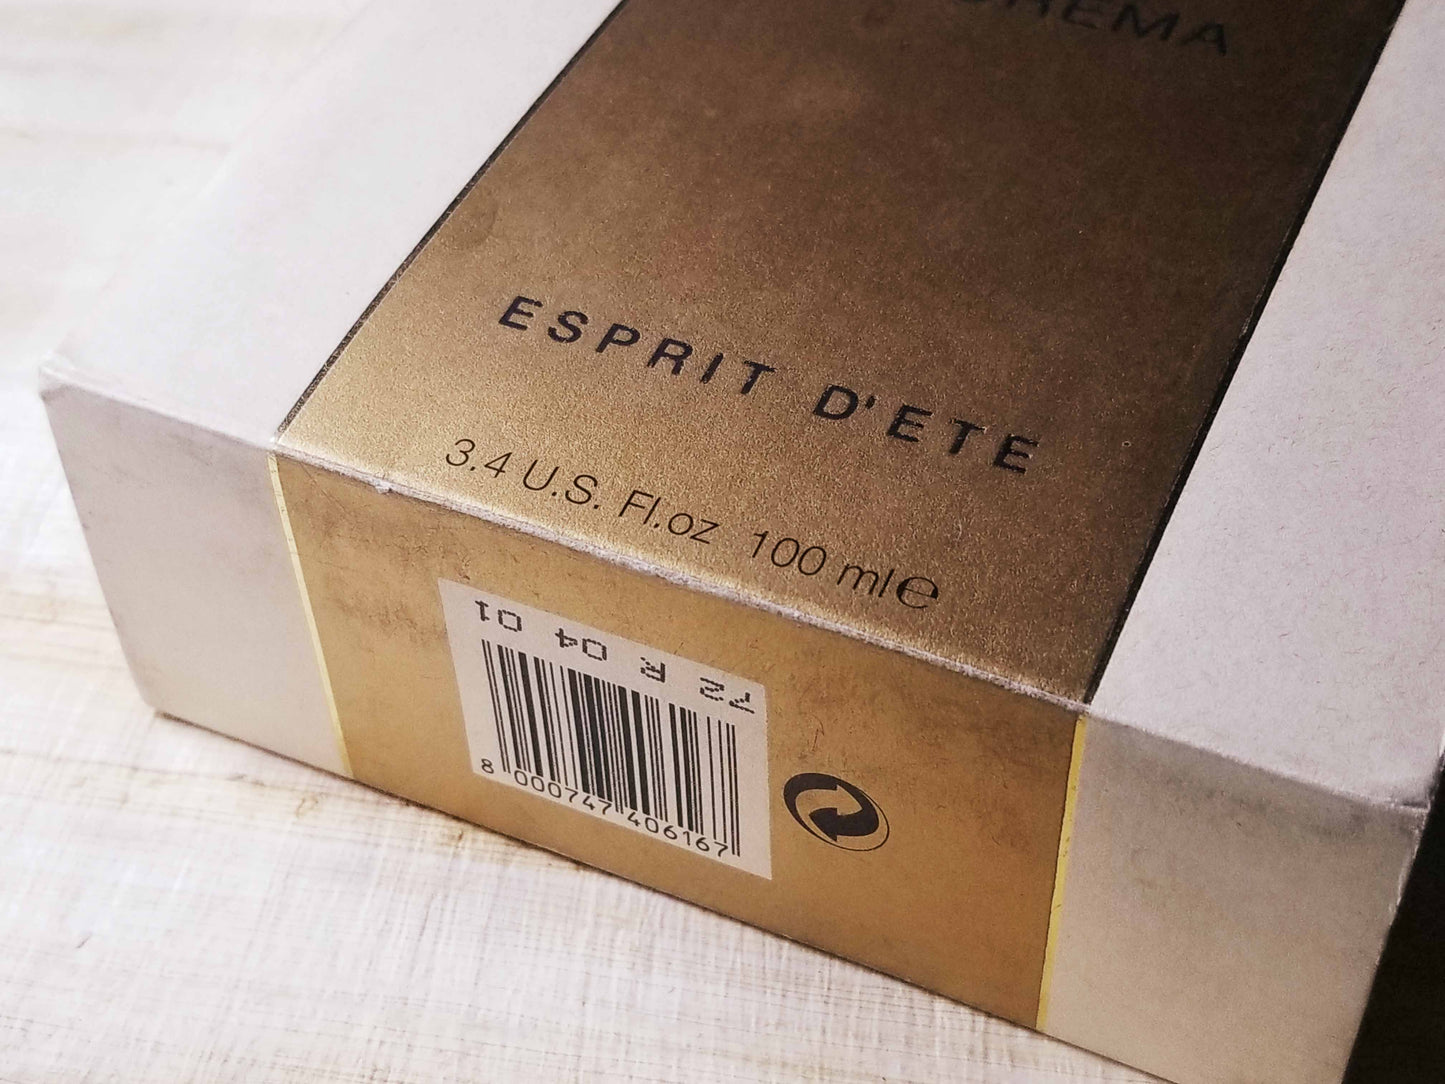 Fendi Theorema Esprit d'Ete for women Spray 100 ml 3.4 oz, Vintage, Rare